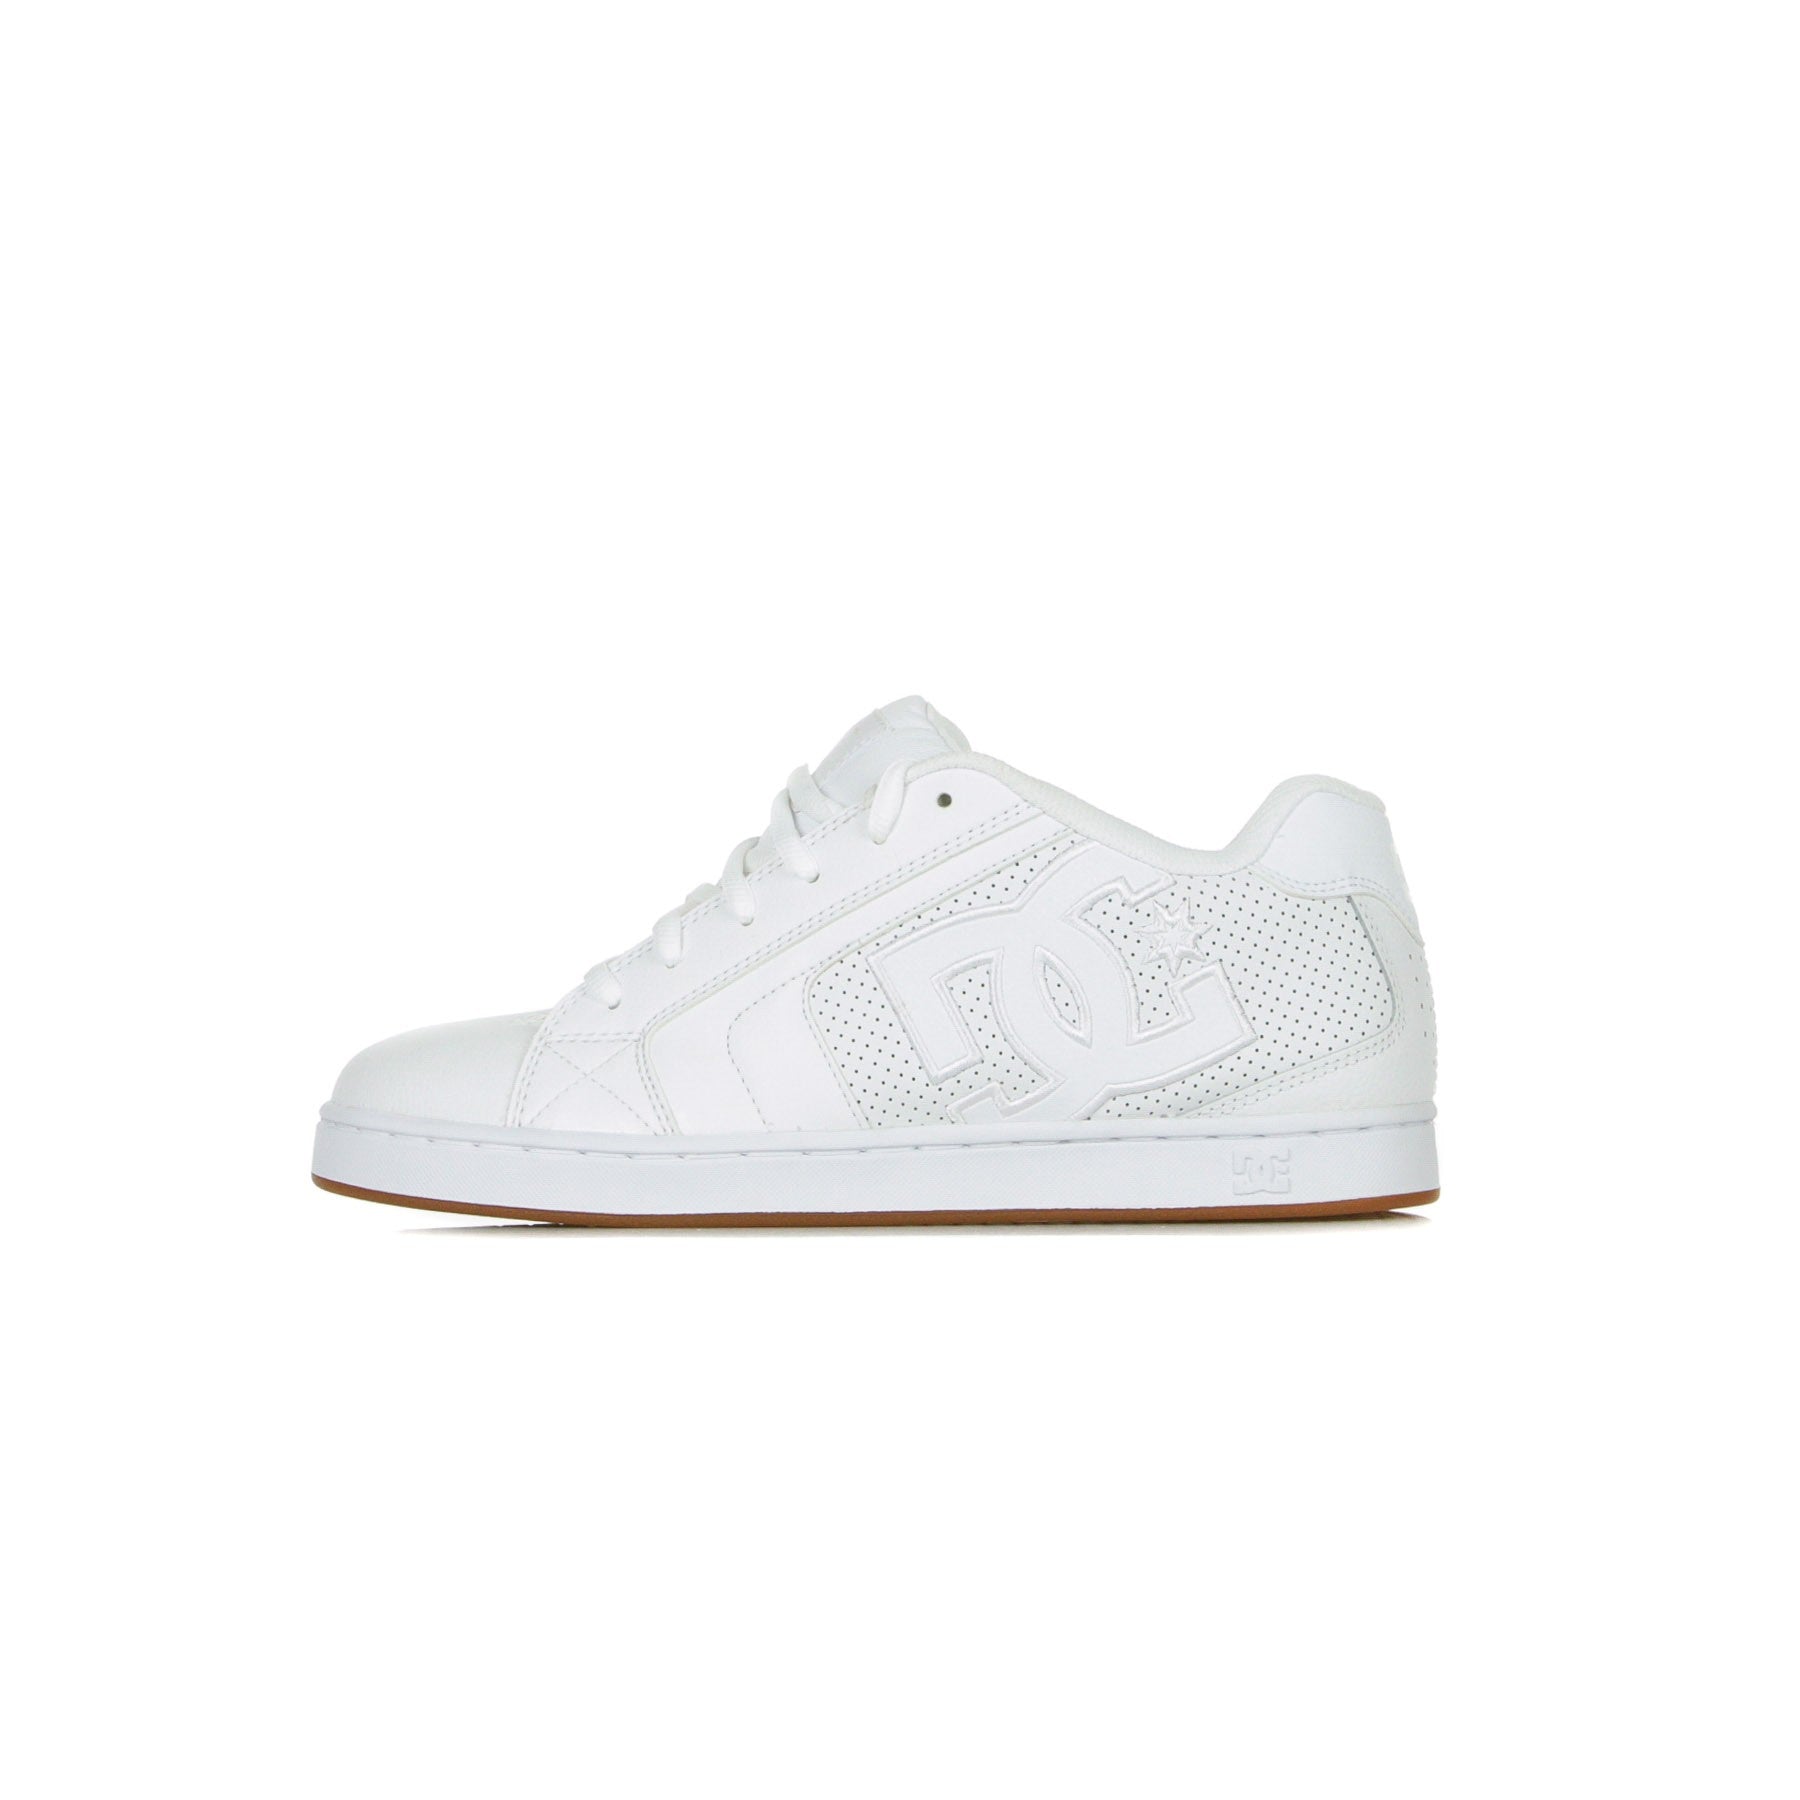 Men's Skate Shoes Net White/white/gum